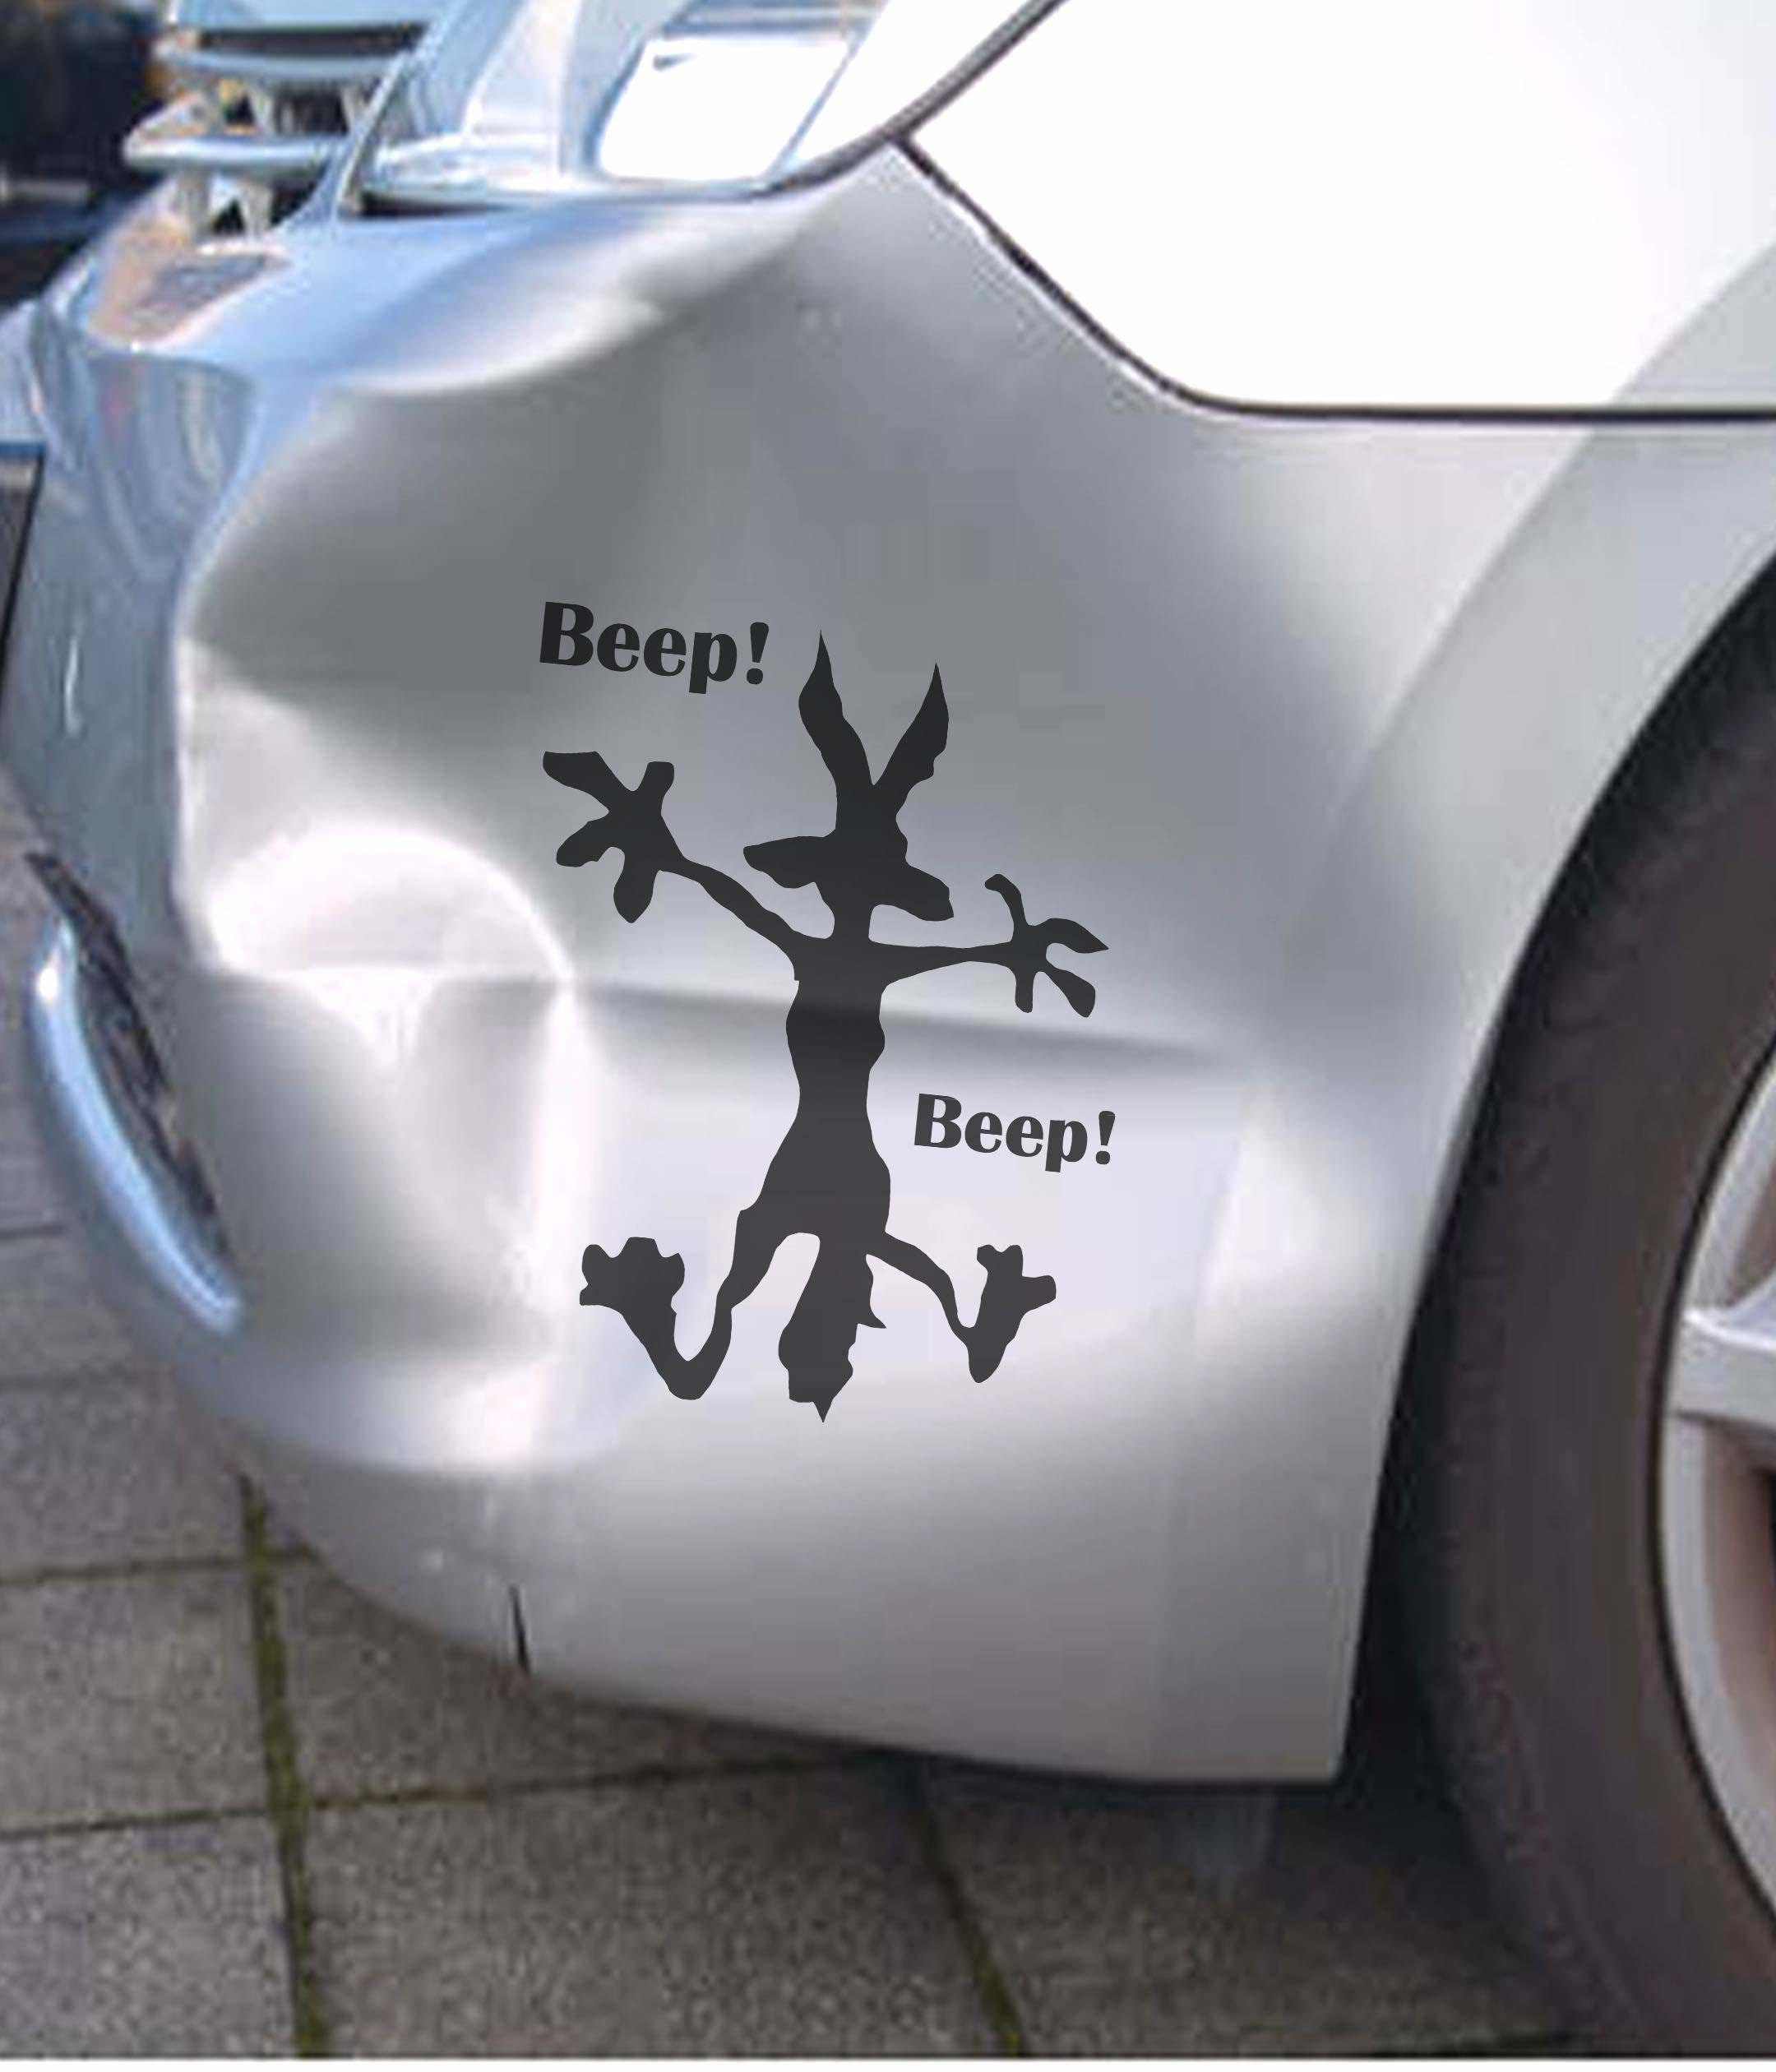 ARWY Batman Begins Windows, Sides, Hood, Bumper Car Sticker (Black)